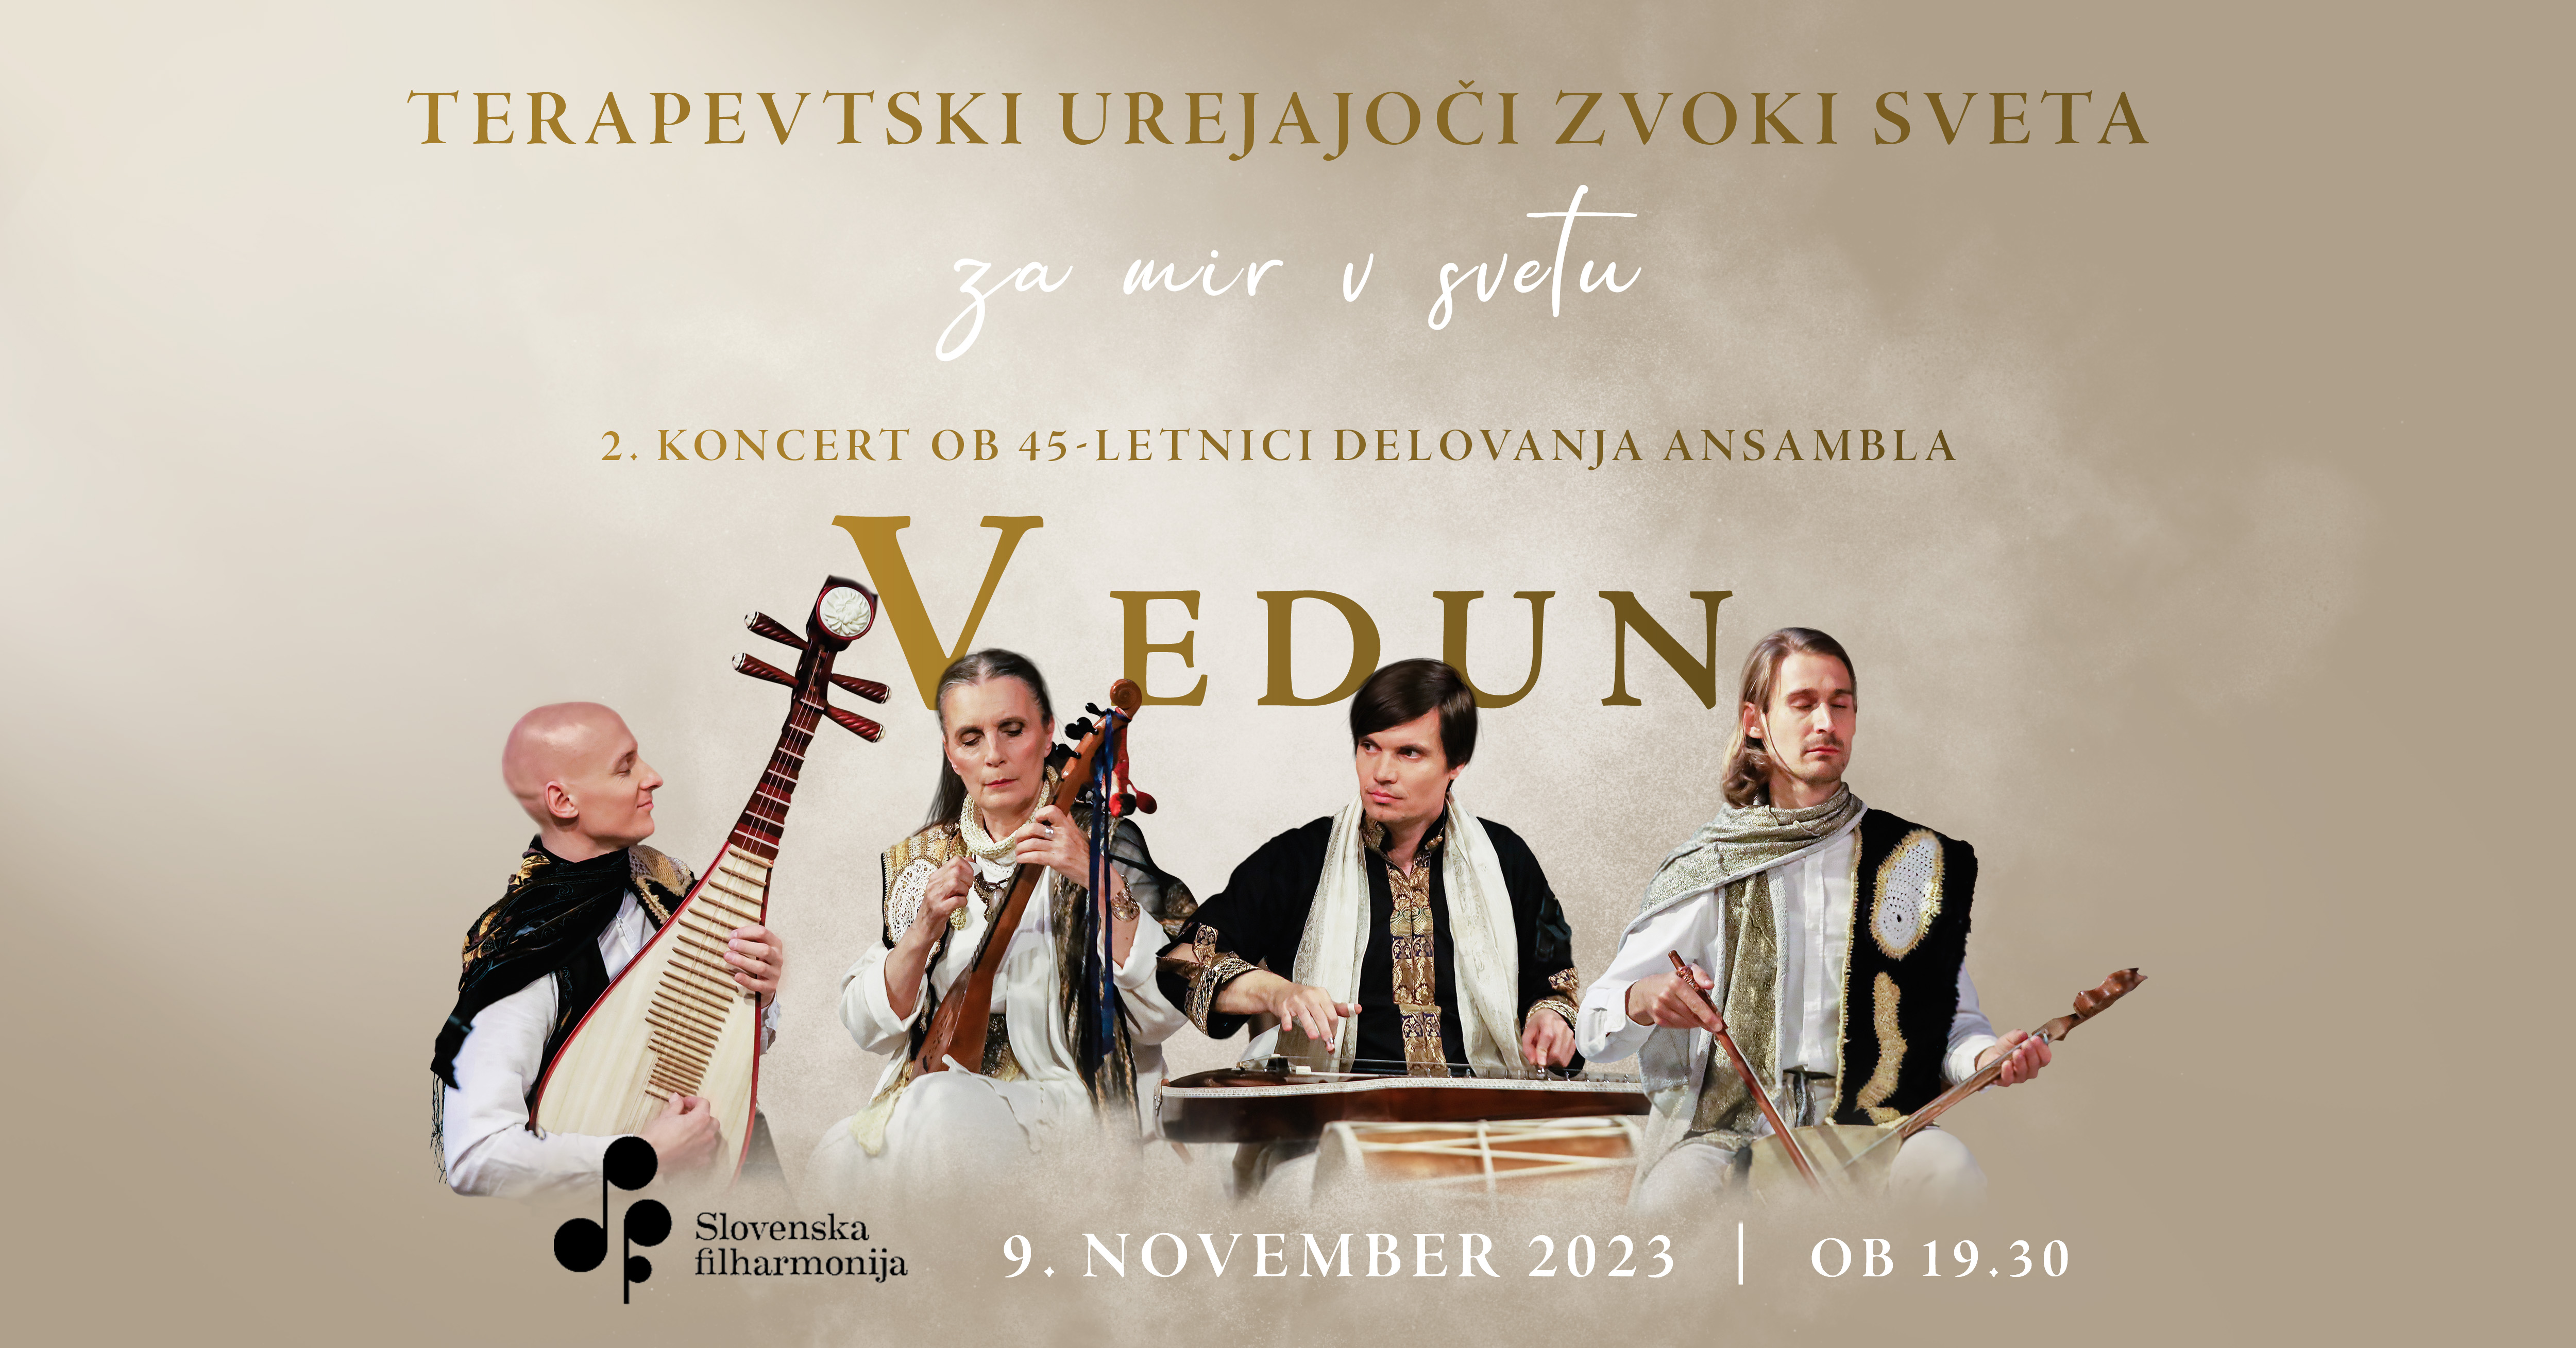 Tickets for TERAPEVTSKI UREJAJOČI ZVOKI SVETA, 09.11.2023 on the 19:30 at Dvorana Marjana Kozine, Slovenska filharmonija - Ljubljana